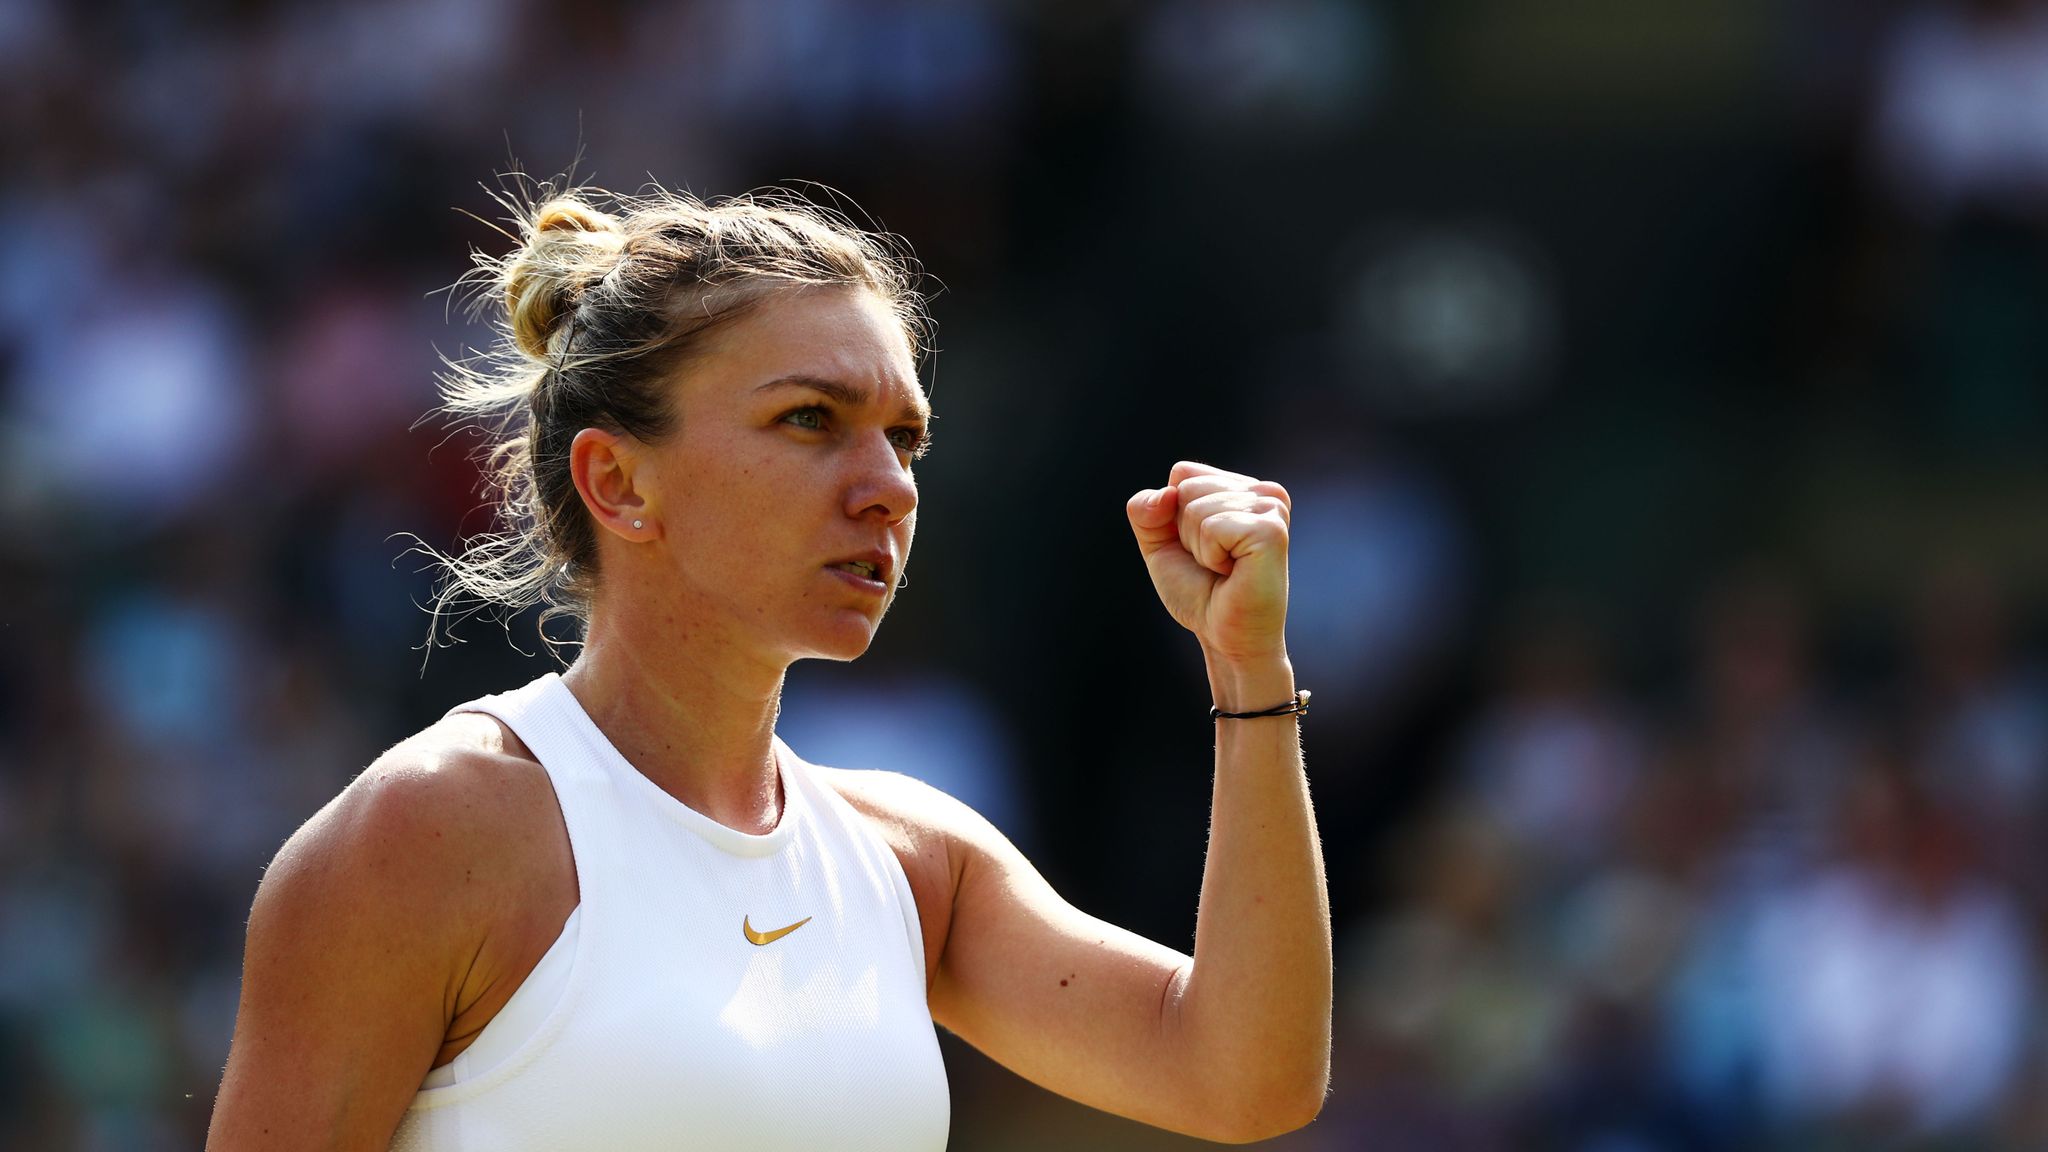 Wimbledon 2019 Women S Draw Tennis News Sky Sports Images, Photos, Reviews